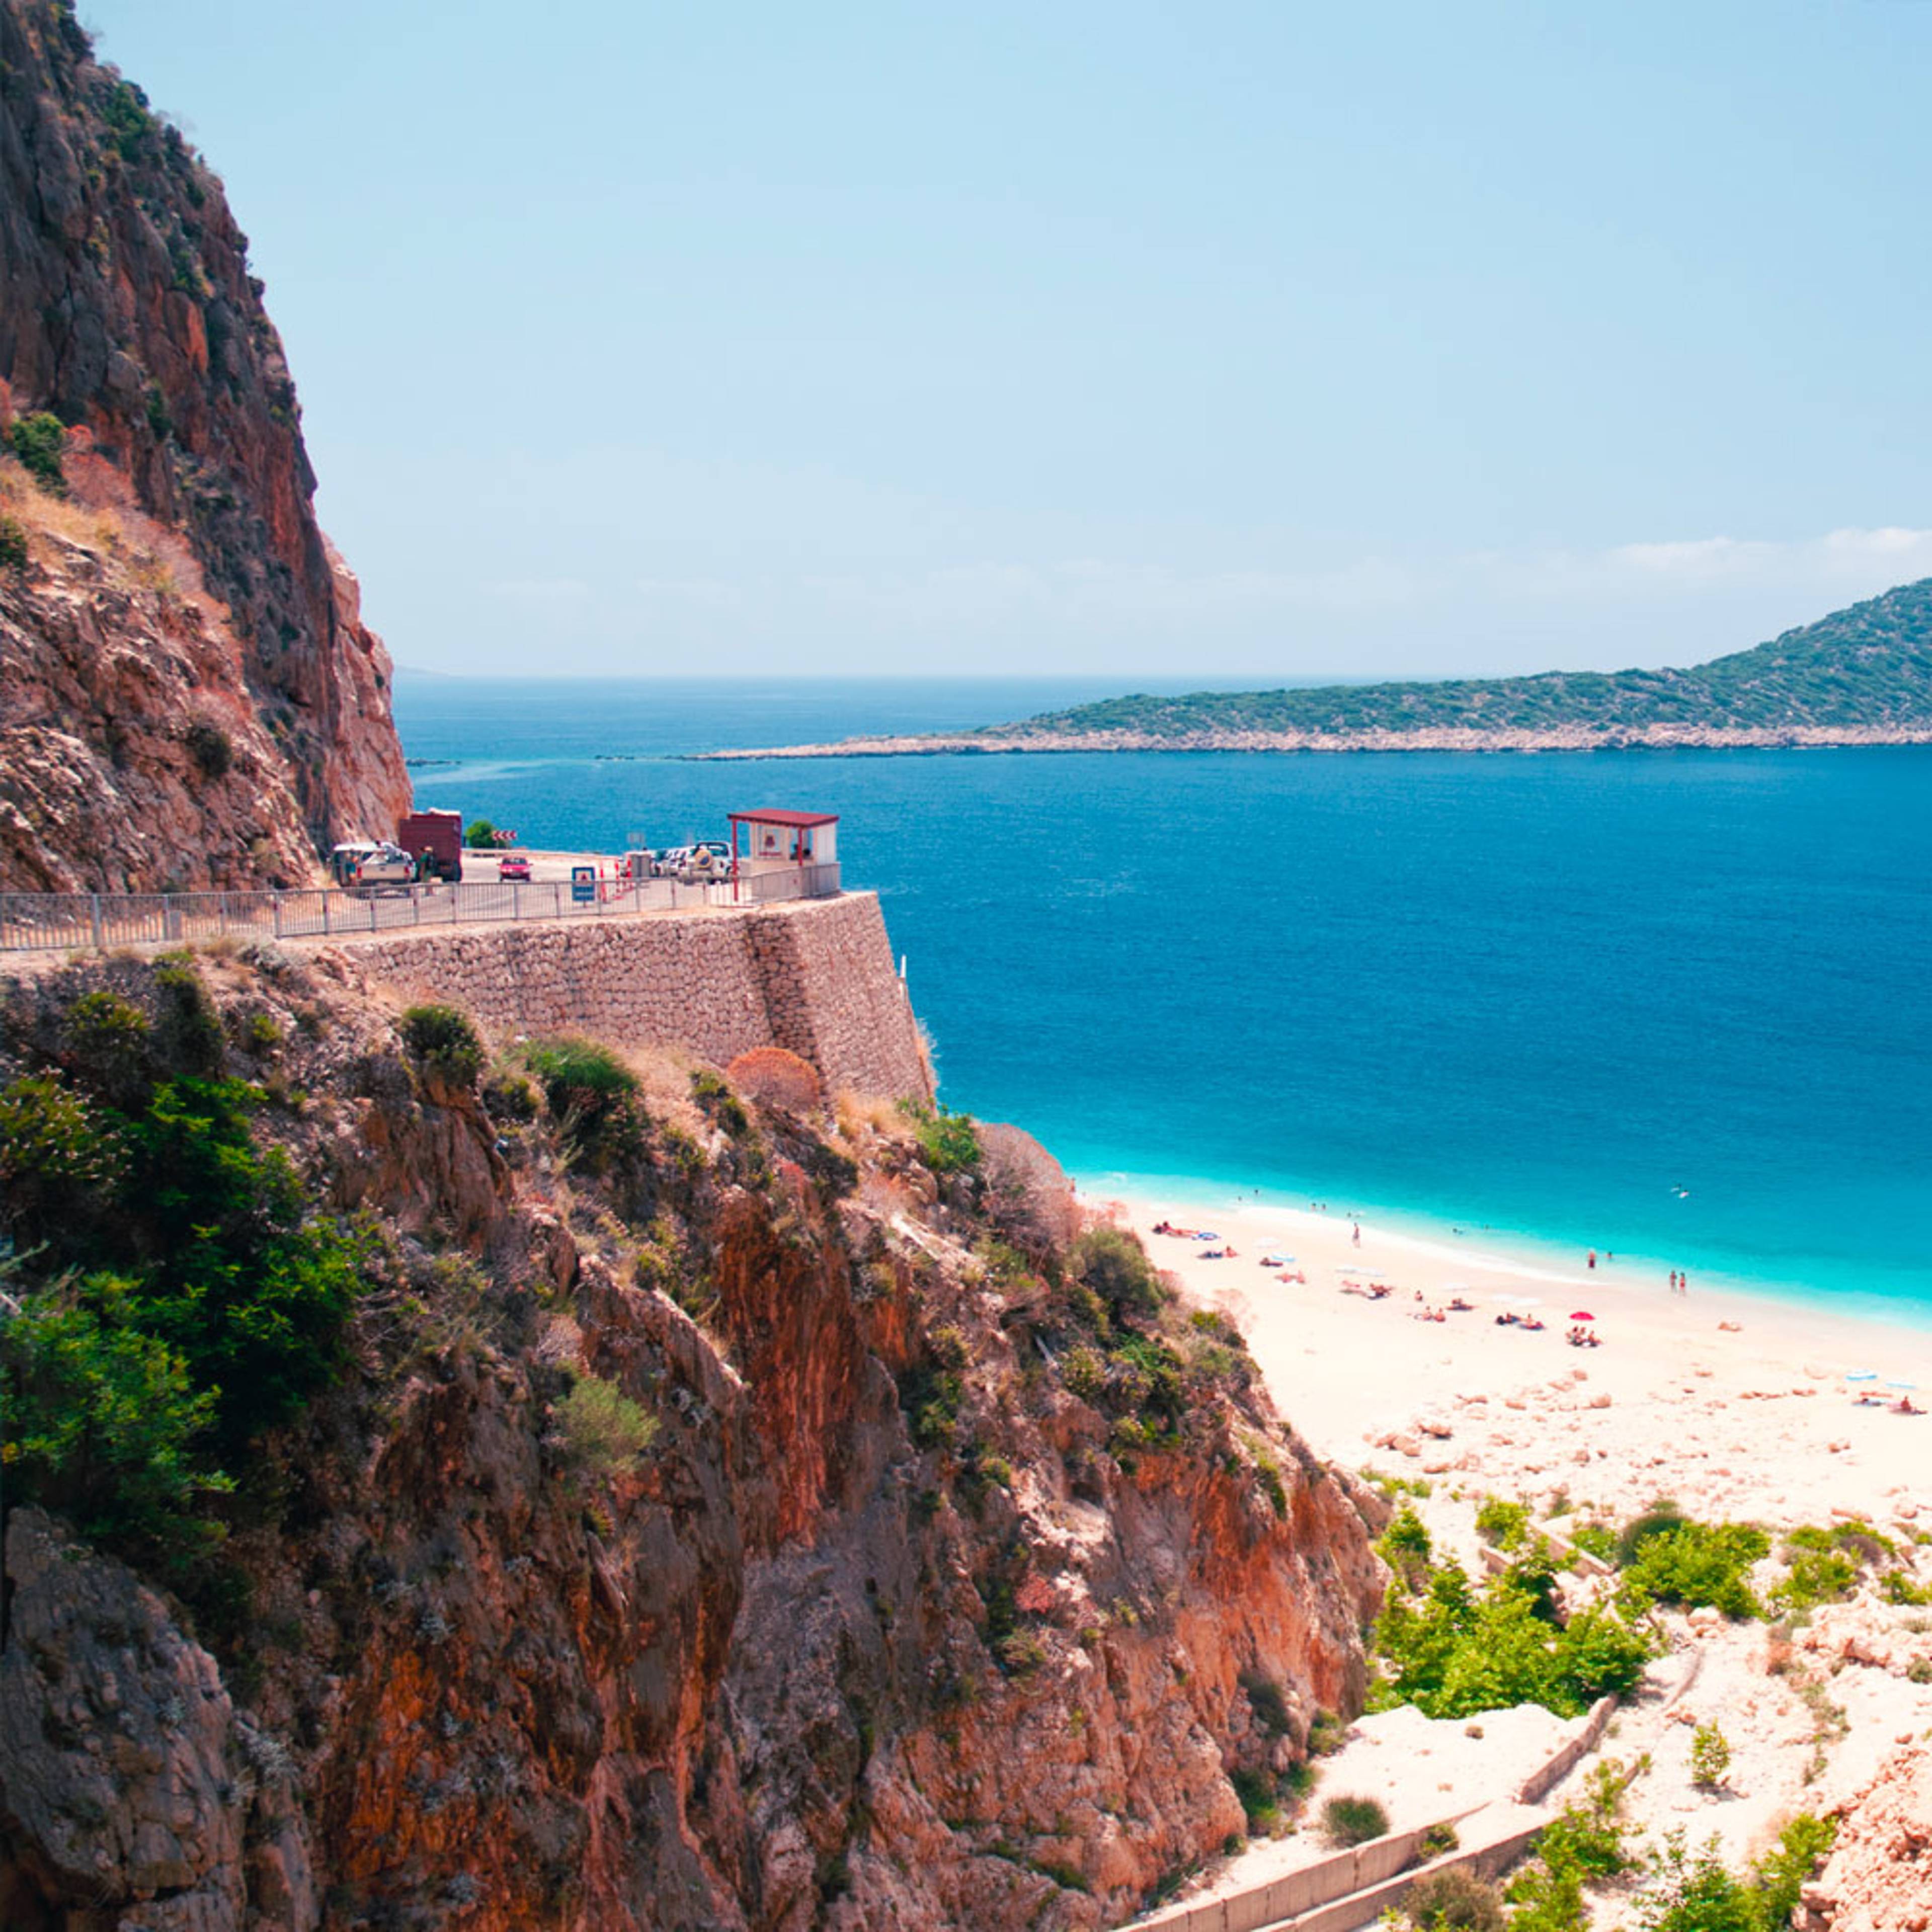 Découvrez les plus belles plages lors de votre voyage en Turquie 100% sur mesure